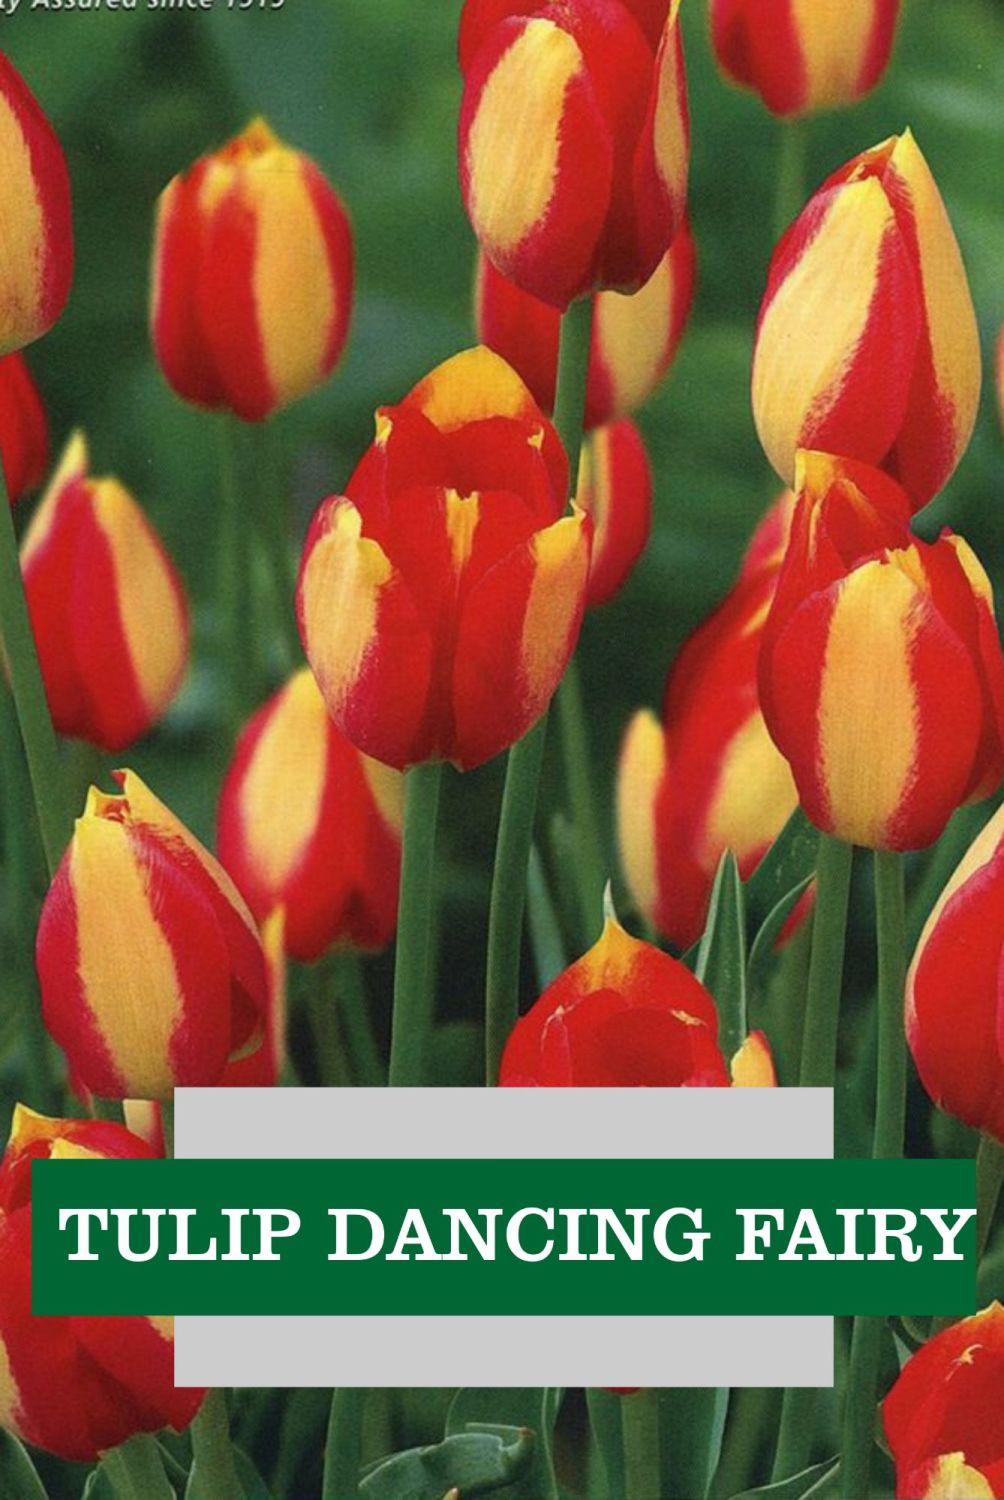 TULIP DANCING FAIRY